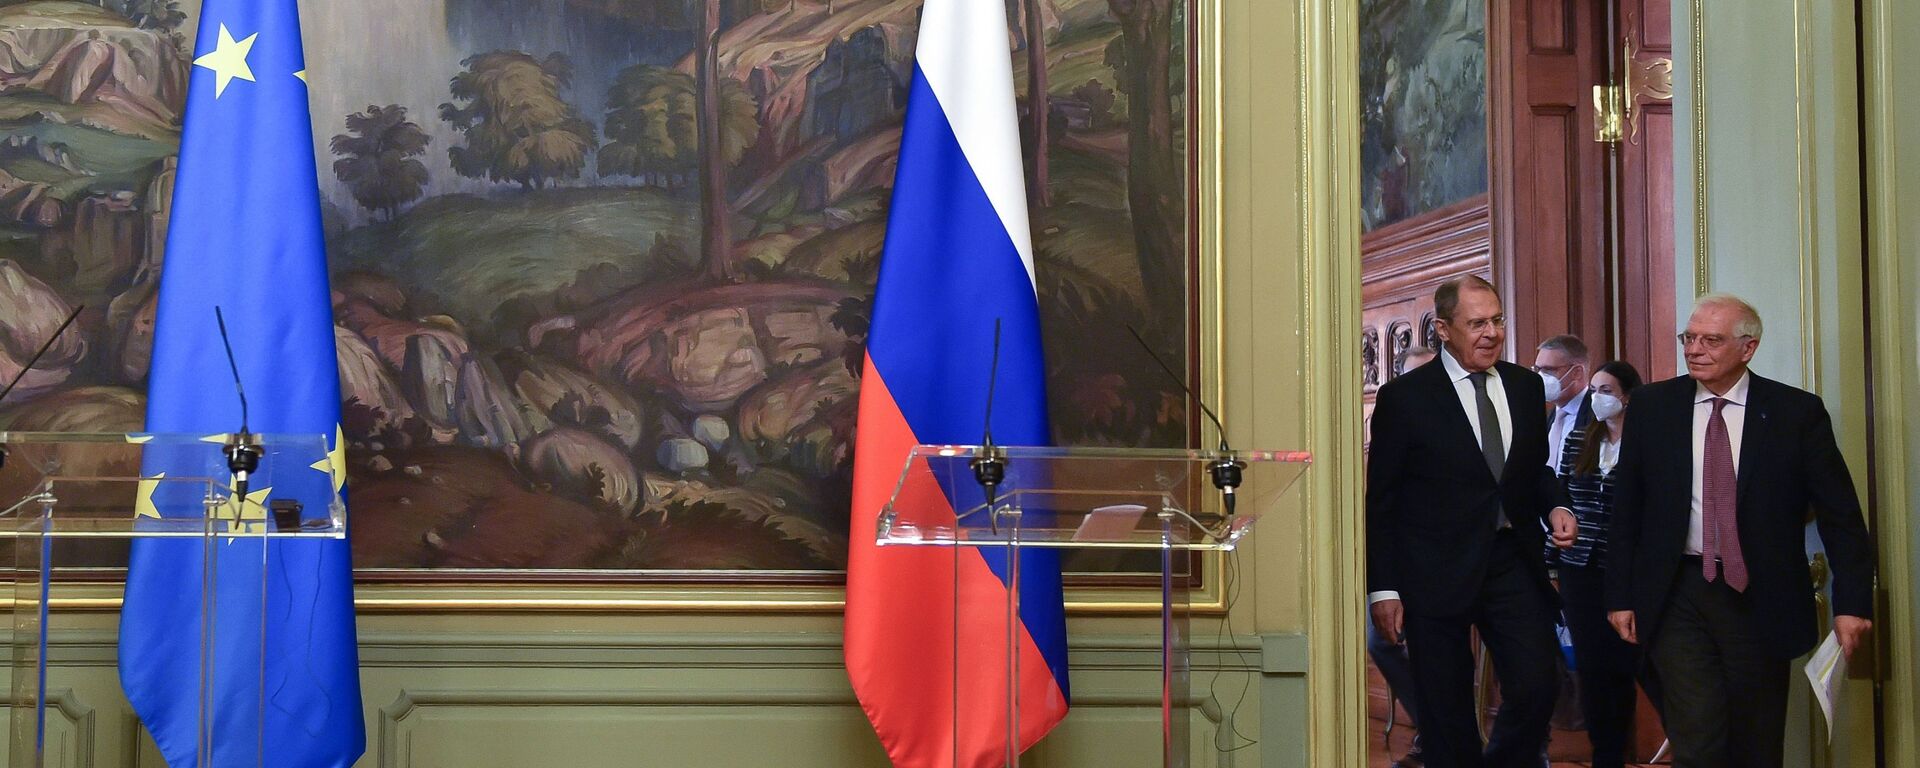 El jefe de la diplomacia europea, Josep Borrell, junto al canciller de Rusia, Serguéi Lavrov - Sputnik Mundo, 1920, 19.12.2022